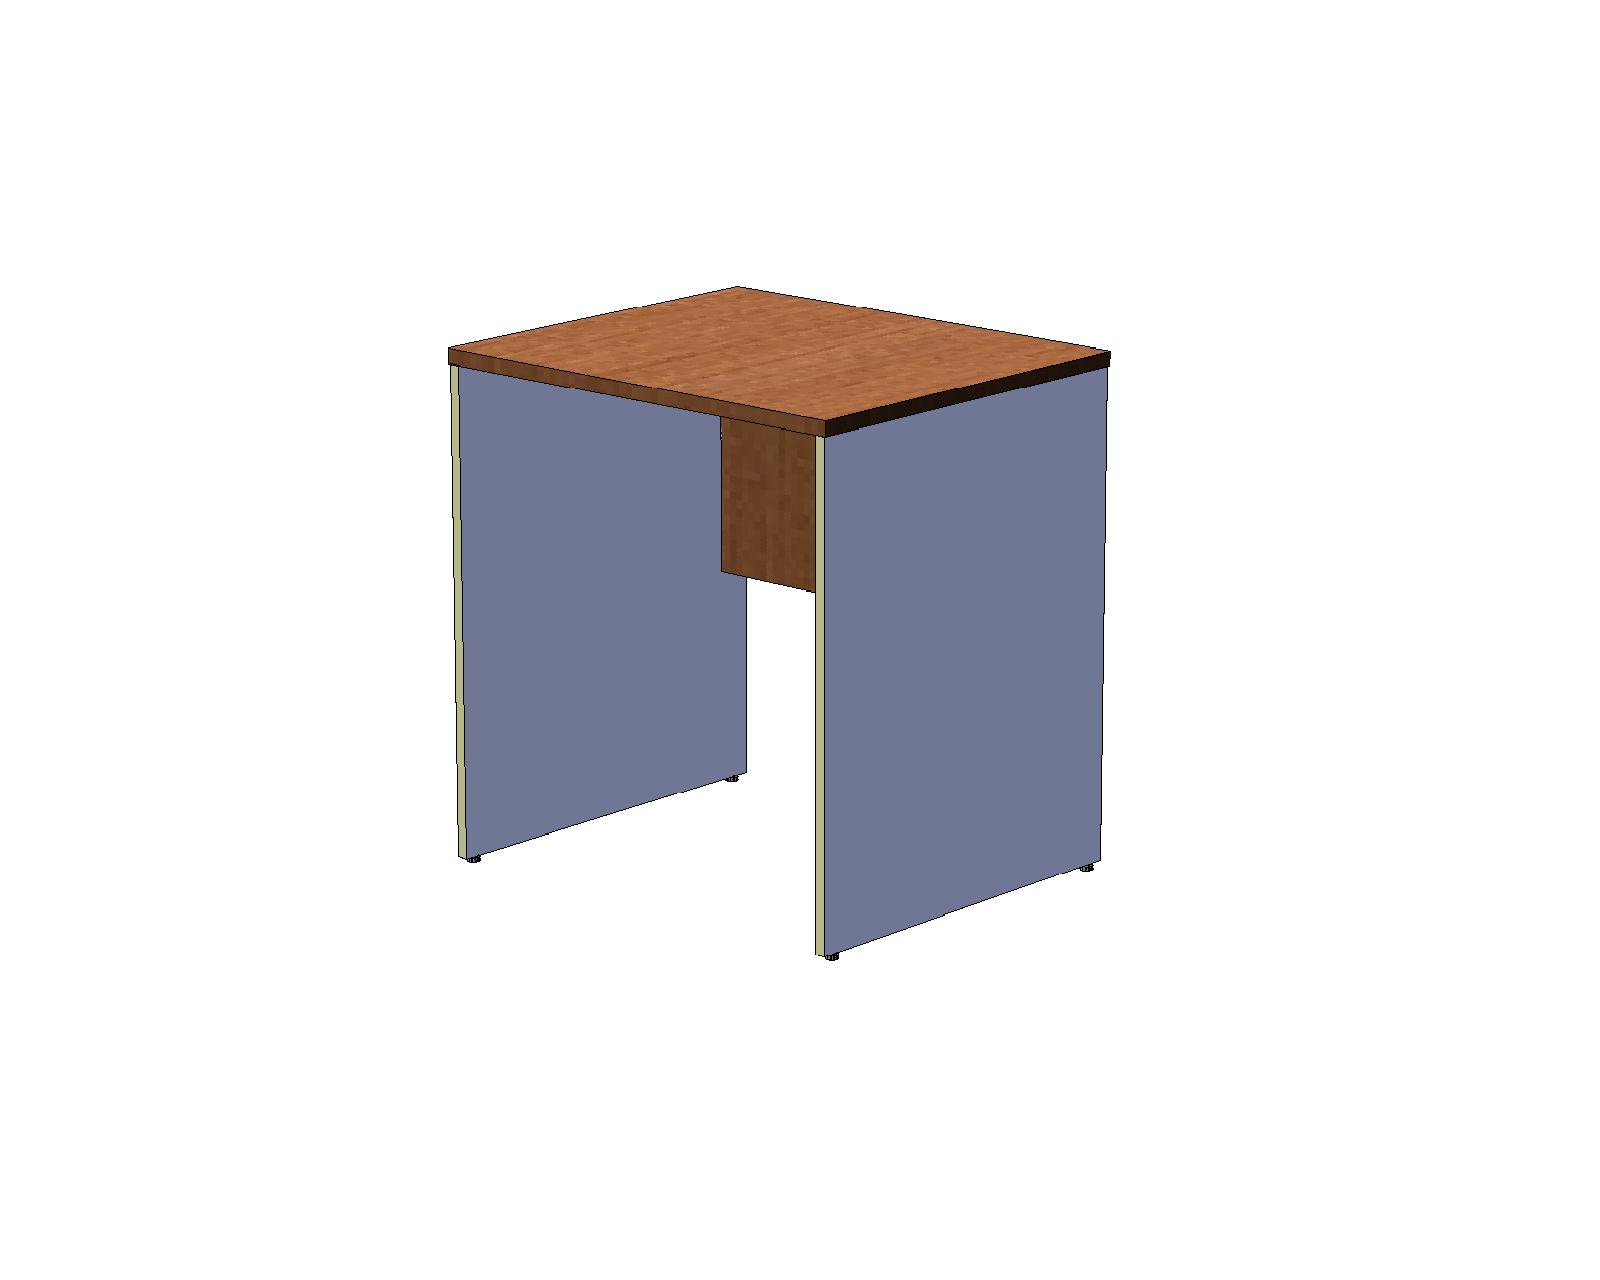 Офисный стол шир. 60 см на панельном каркасе 70 см, вишня оксфорд/серый A16.1127/CH10